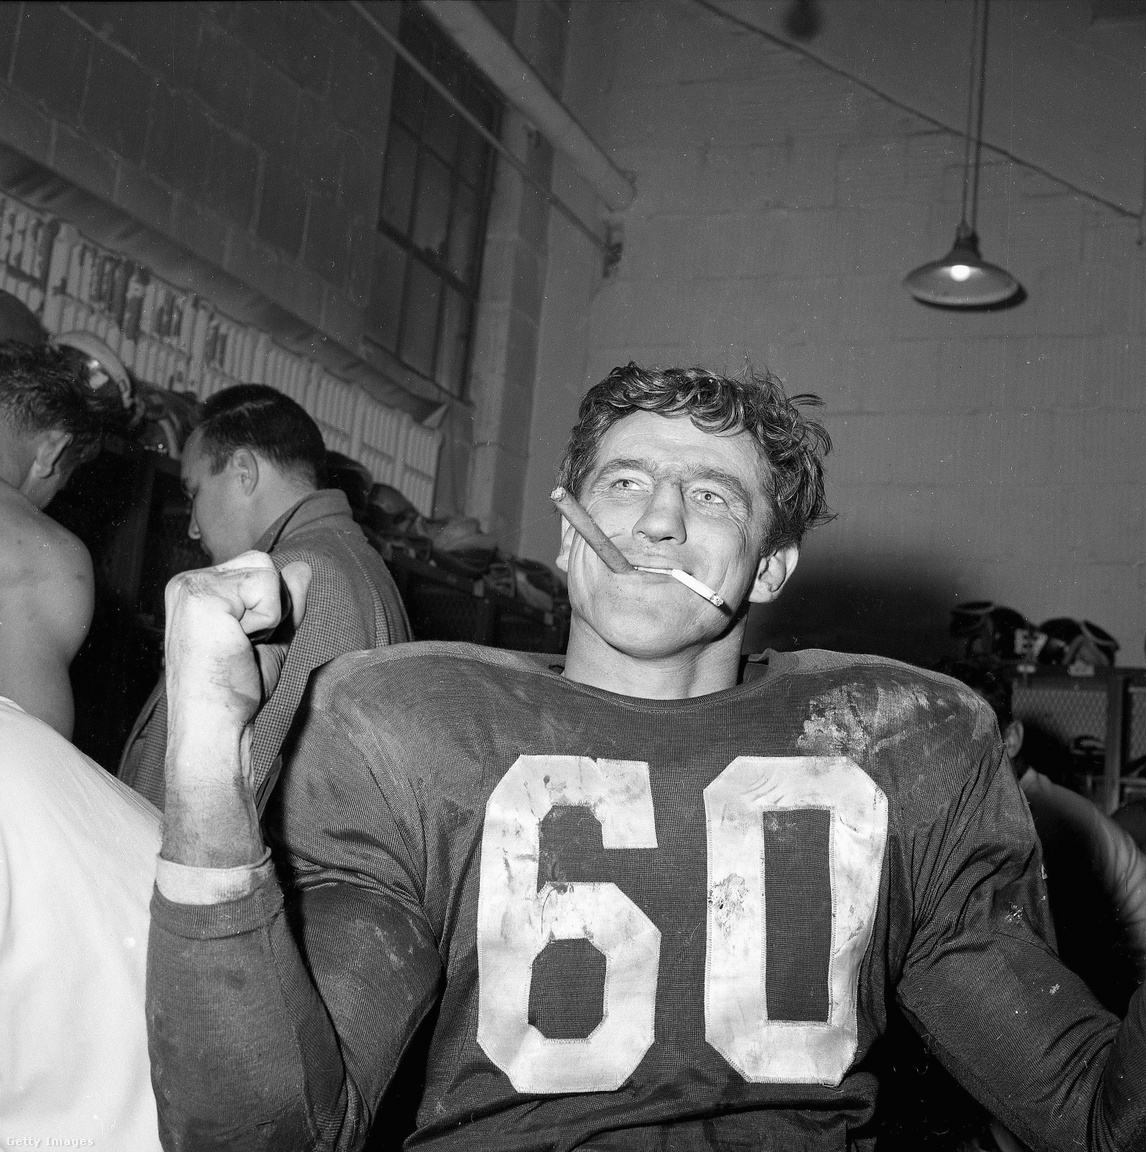 Talán többen ismerik a képet, amin Len Dawson az első Super Bowl szünetében cigizget, de kevés kép mutatja jobban, mennyire más volt a világ az 1960-as évek elején, mint most, nagyjából 60 évvel később: Chuck Bednarik, a Philadelphia Eagles centere egy szivarral ÉS egy cigarettával a szájában ünnepli az Eagles 1960-as, a Green Bay Packers ellen nyert bajnoki címét. A mérkőzés jelentősége nem elhanyagolható, Vince Lombardi pályafutása során először és utoljára kapott ki a rájátszásban edzőként. A szlovák származású, de már Amerikában született Bednarik az 1950-es évek, illetve az NFL 75 és 100 éves álomcsapatába is bekerült, 60-as mezét visszavonultatta az Eagles, illetve az egyetemi bajnokságban és az NFL-ben is halhatatlan lett. Egyetemi játékosként szinte minden meccset végigjátszott a támadó- és védőcsapatban egyszerre szerepelve, utóbbinak állít emléket, hogy róla nevezték el az év legjobb egyetemi védőjátékosának járó Chuck Bednarik-díjat. Az, hogy az amerikaifutballban csúcsra ért, különös megkoronázása volt annak, hogy a második világháborúból hősként, 30 sikeres repülős küldetés után tért vissza. A 60-as évek viszont csak a megbecsülésről szóltak, Bednariknak az amerikaifutball-szezonon kívül betont kellett árulnia, hogy megéljen, innen, és nem az egyébként kivételes keménységéből jött a "Beton Charlie" becenév.
                        